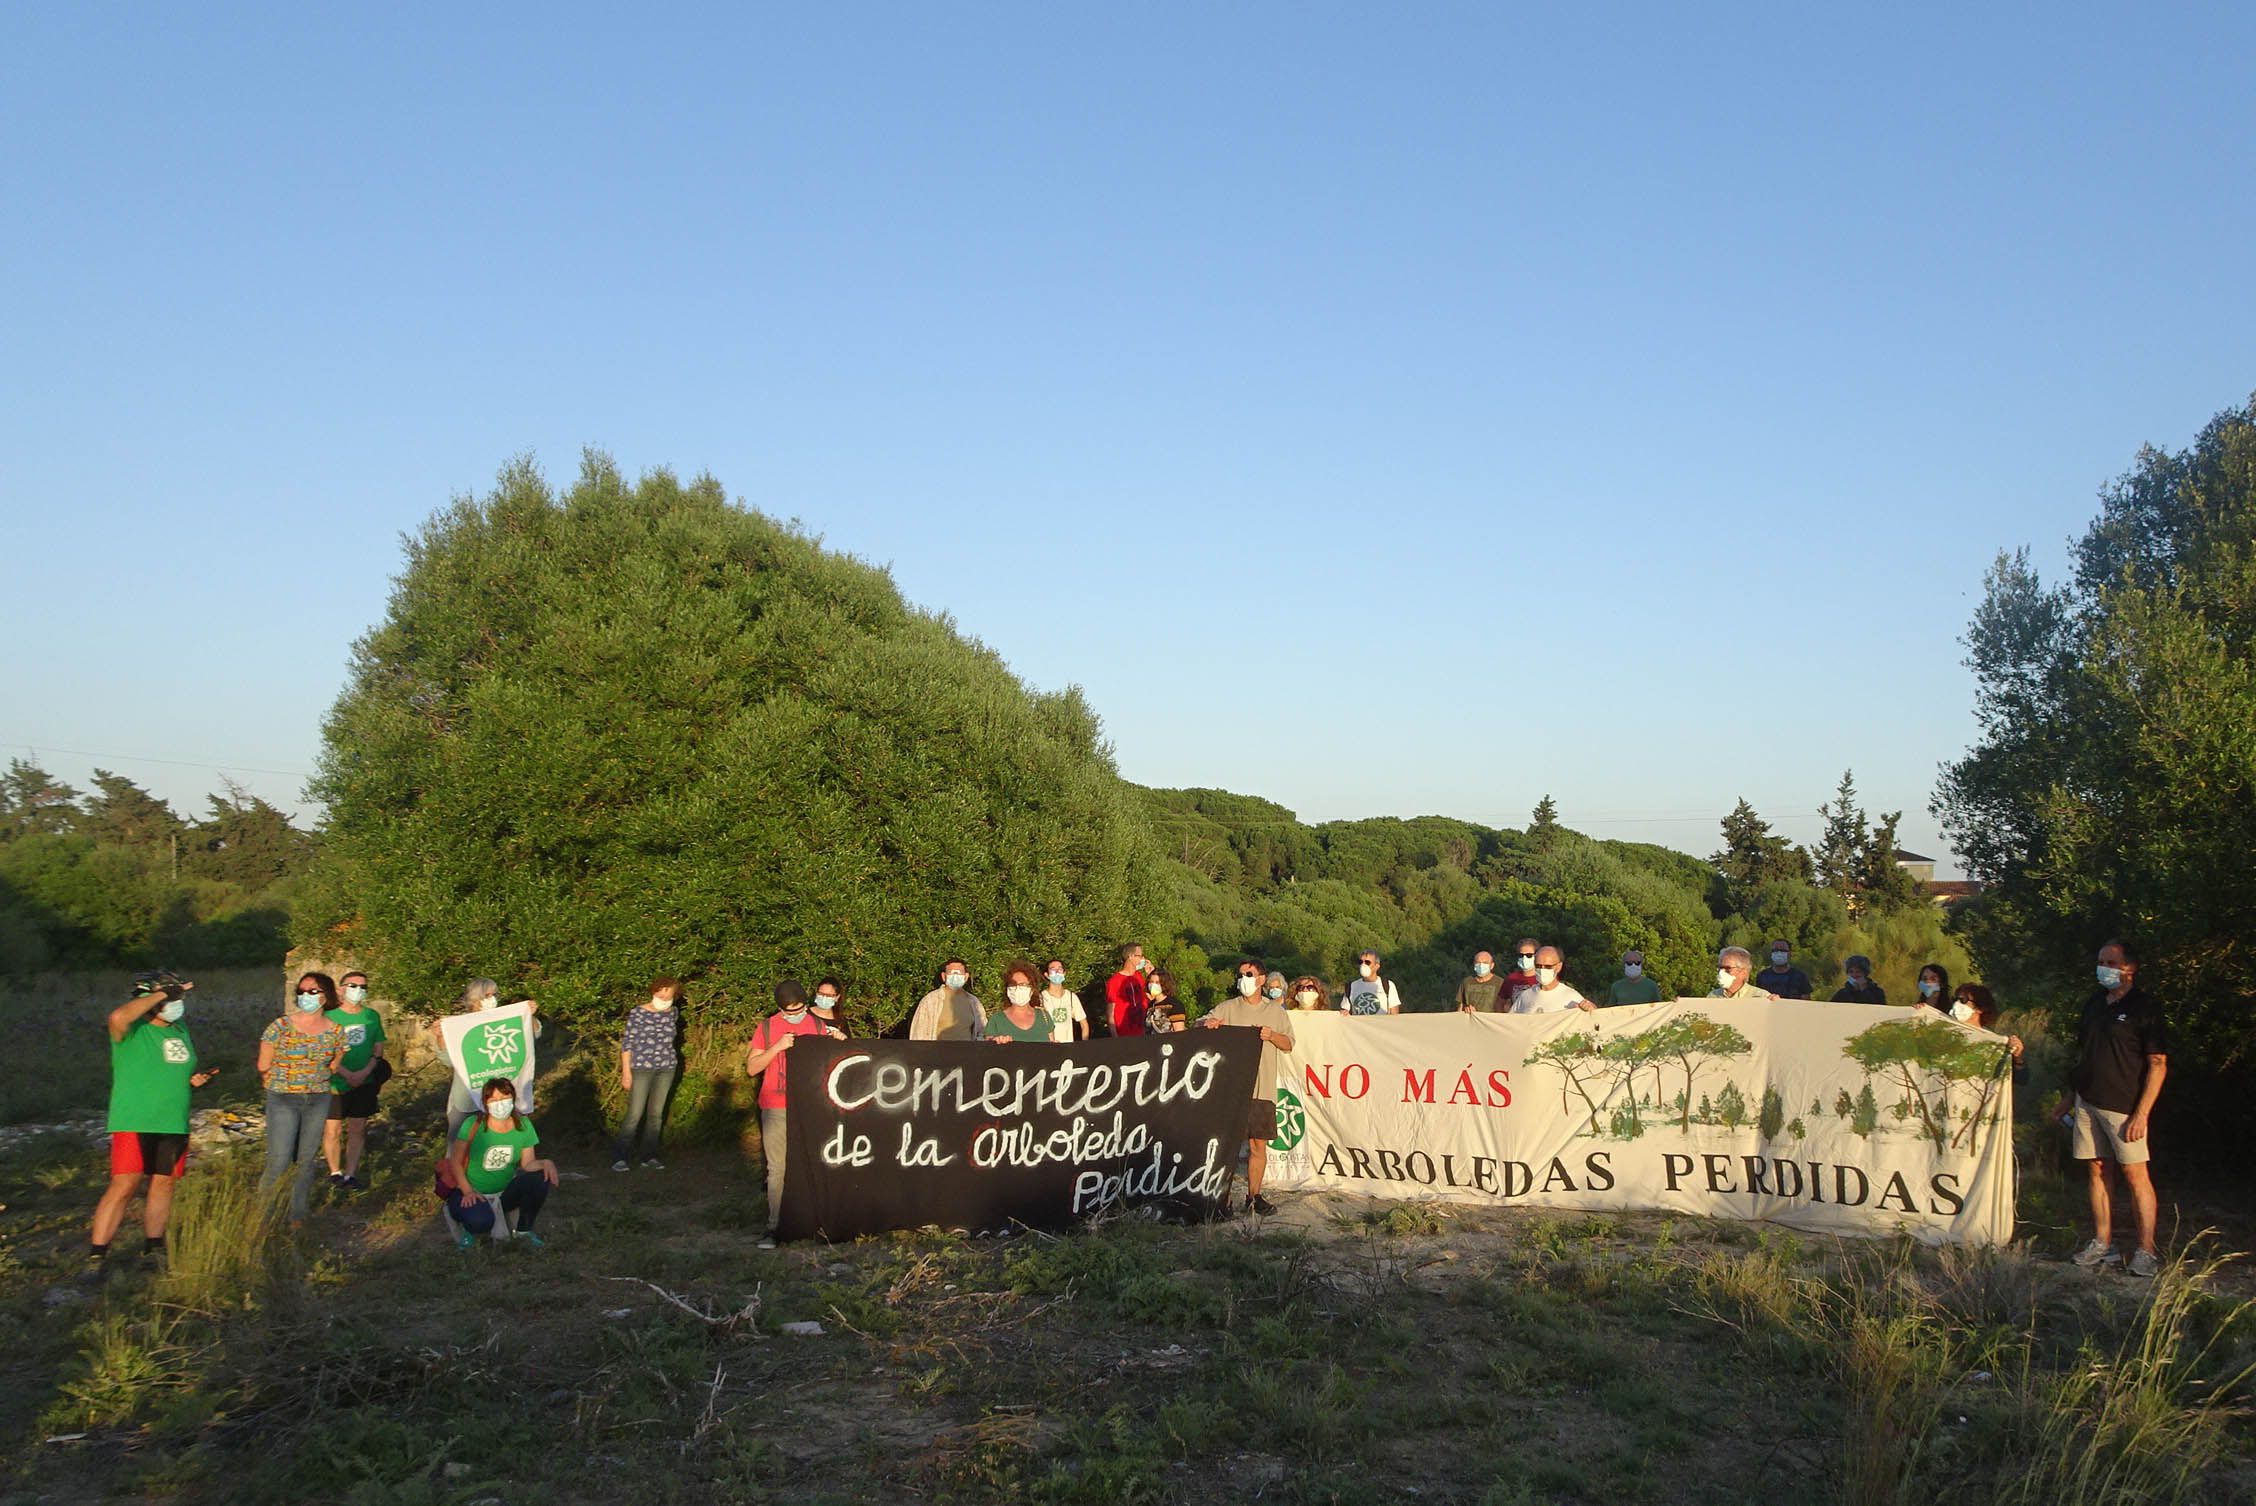 Un momento de la manifestación convocada por Ecologistas en Acción que denuncia que la Junta no de permiso para asistir a una manifestación "pero sí para cazar".